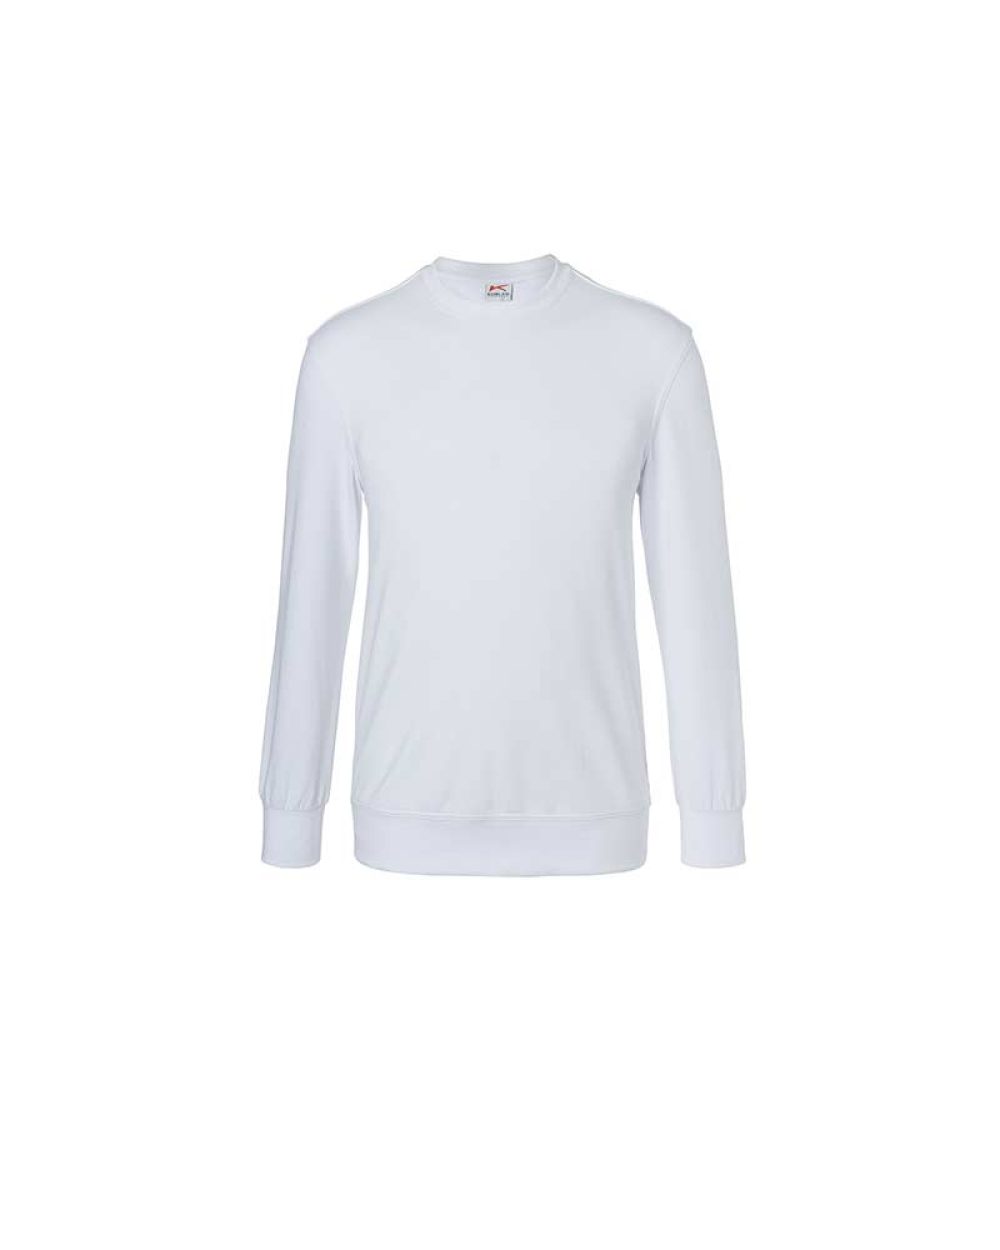 kuebler-sweatshirt-shirts-5023-6330-10